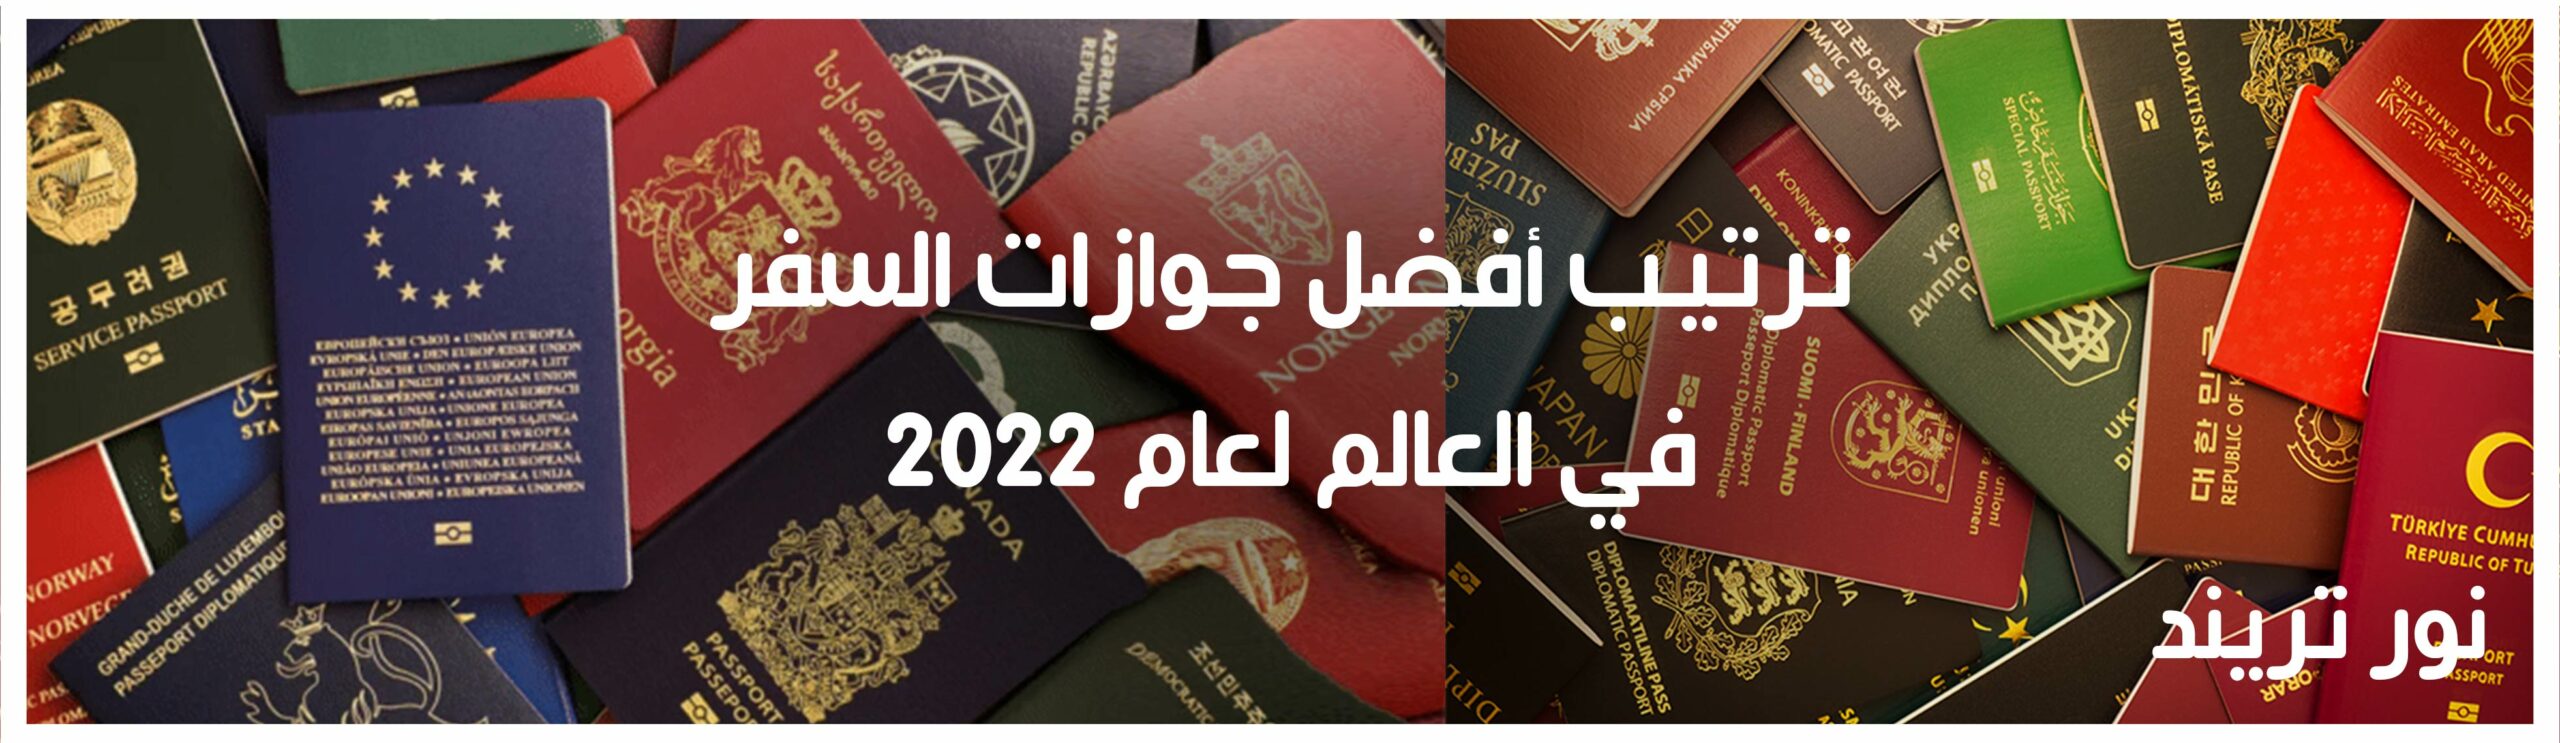 ترتيب أفضل جوازات السفر في العالم لعام 2022